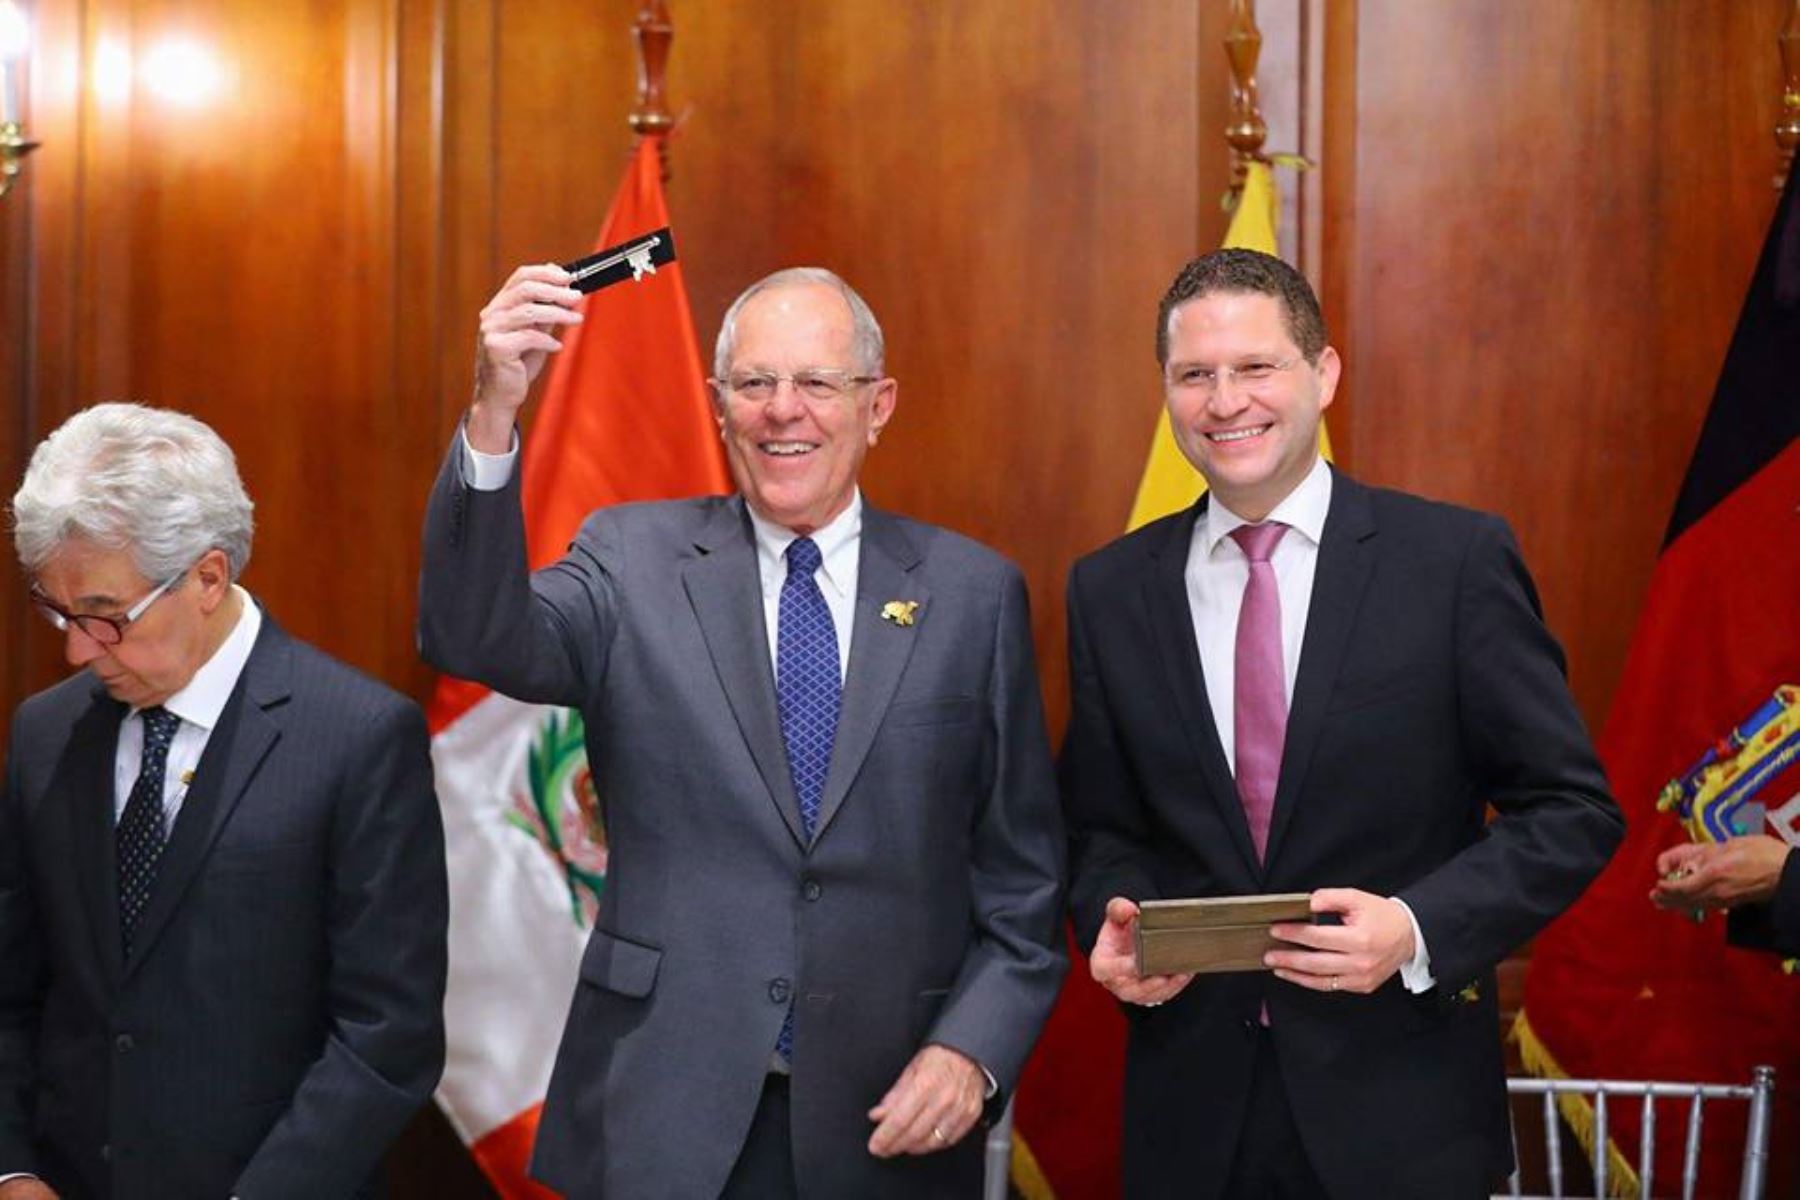 El presidente Pedro Pablo Kuczynski recibió esta noche las llaves de la ciudad de Quito y fue declarado huésped Ilustre de la capital de Ecuador.